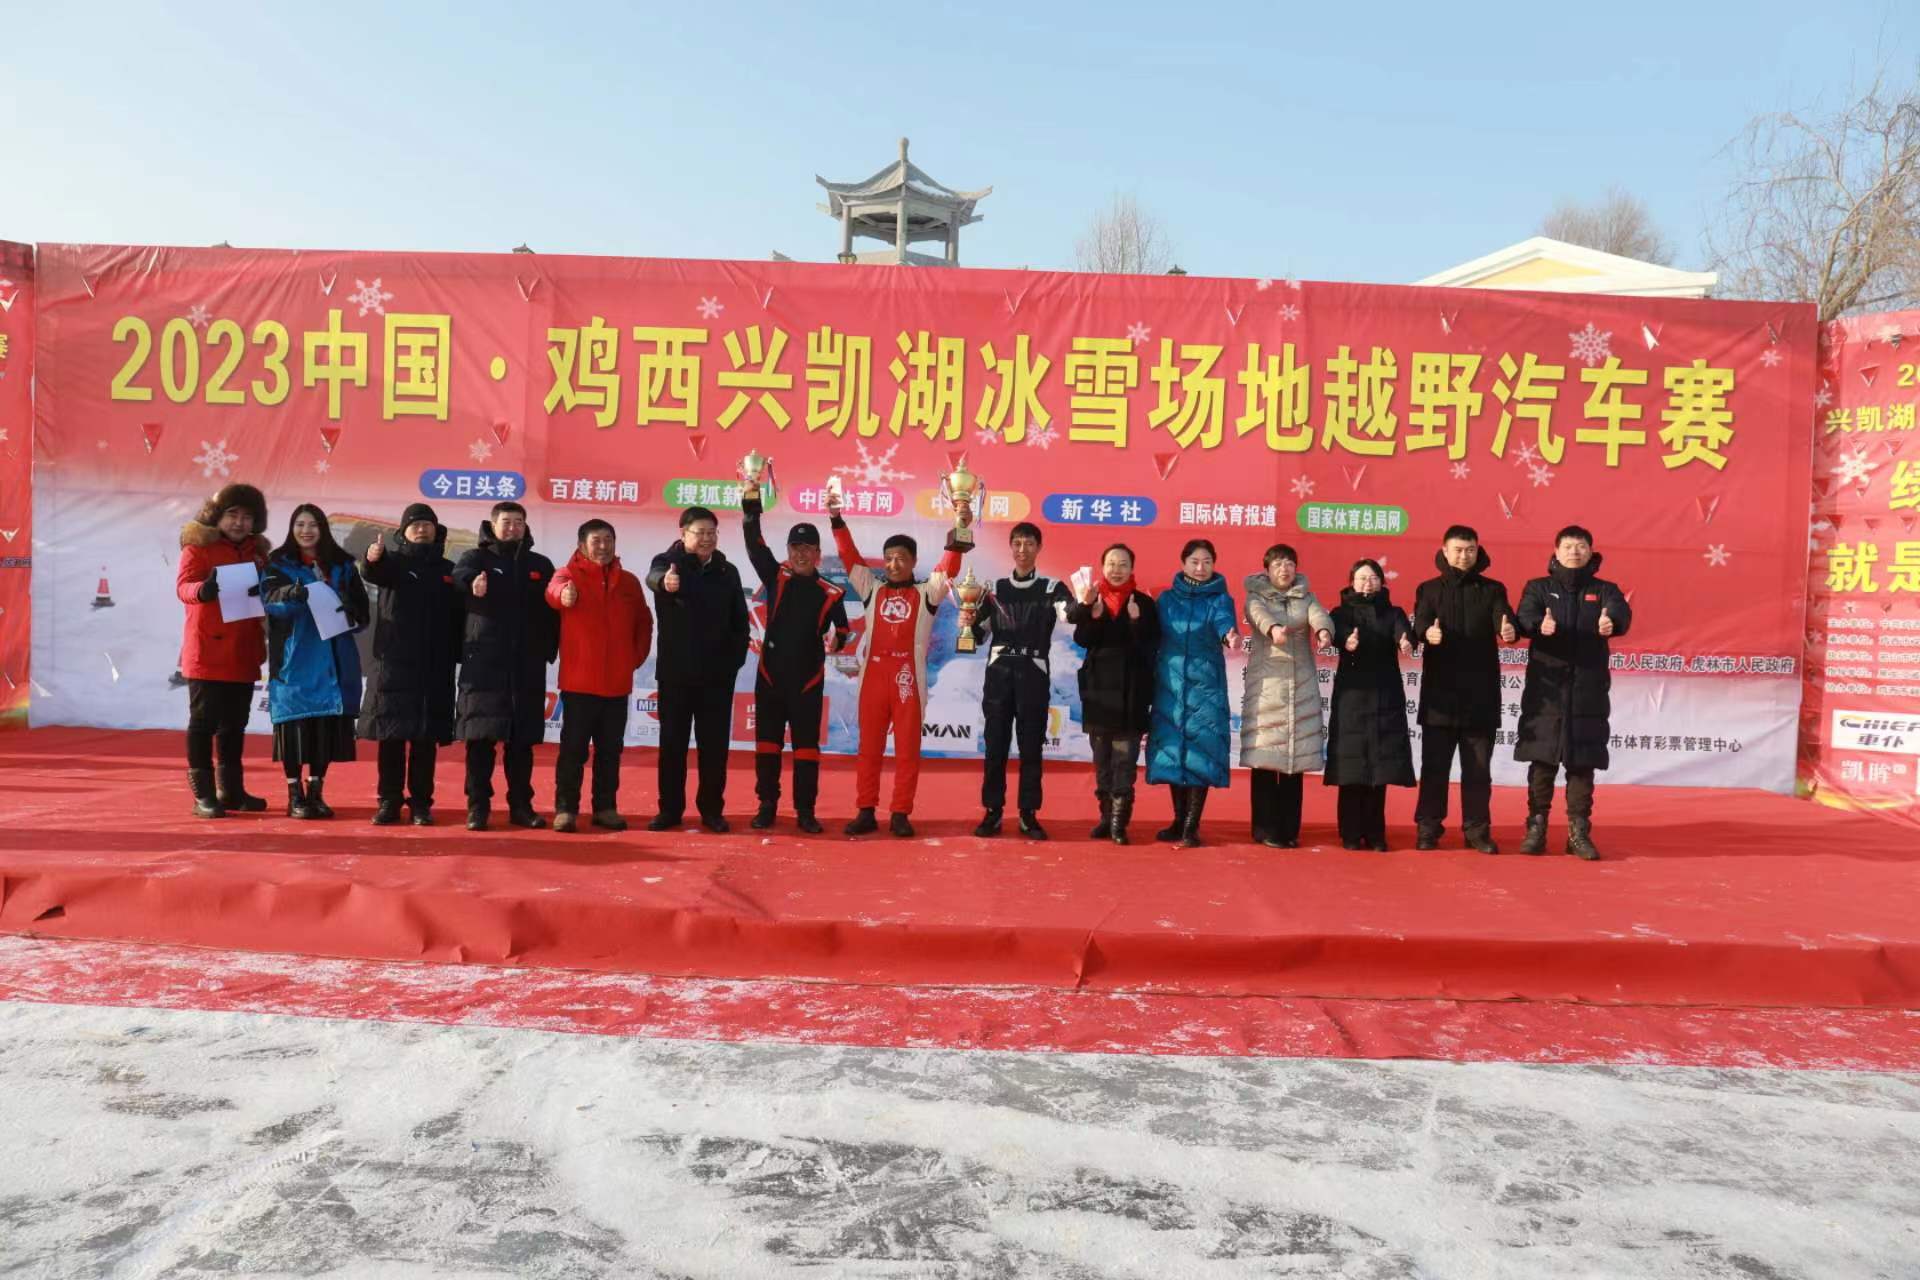  2023中国·鸡西兴凯湖冰雪越野汽车场